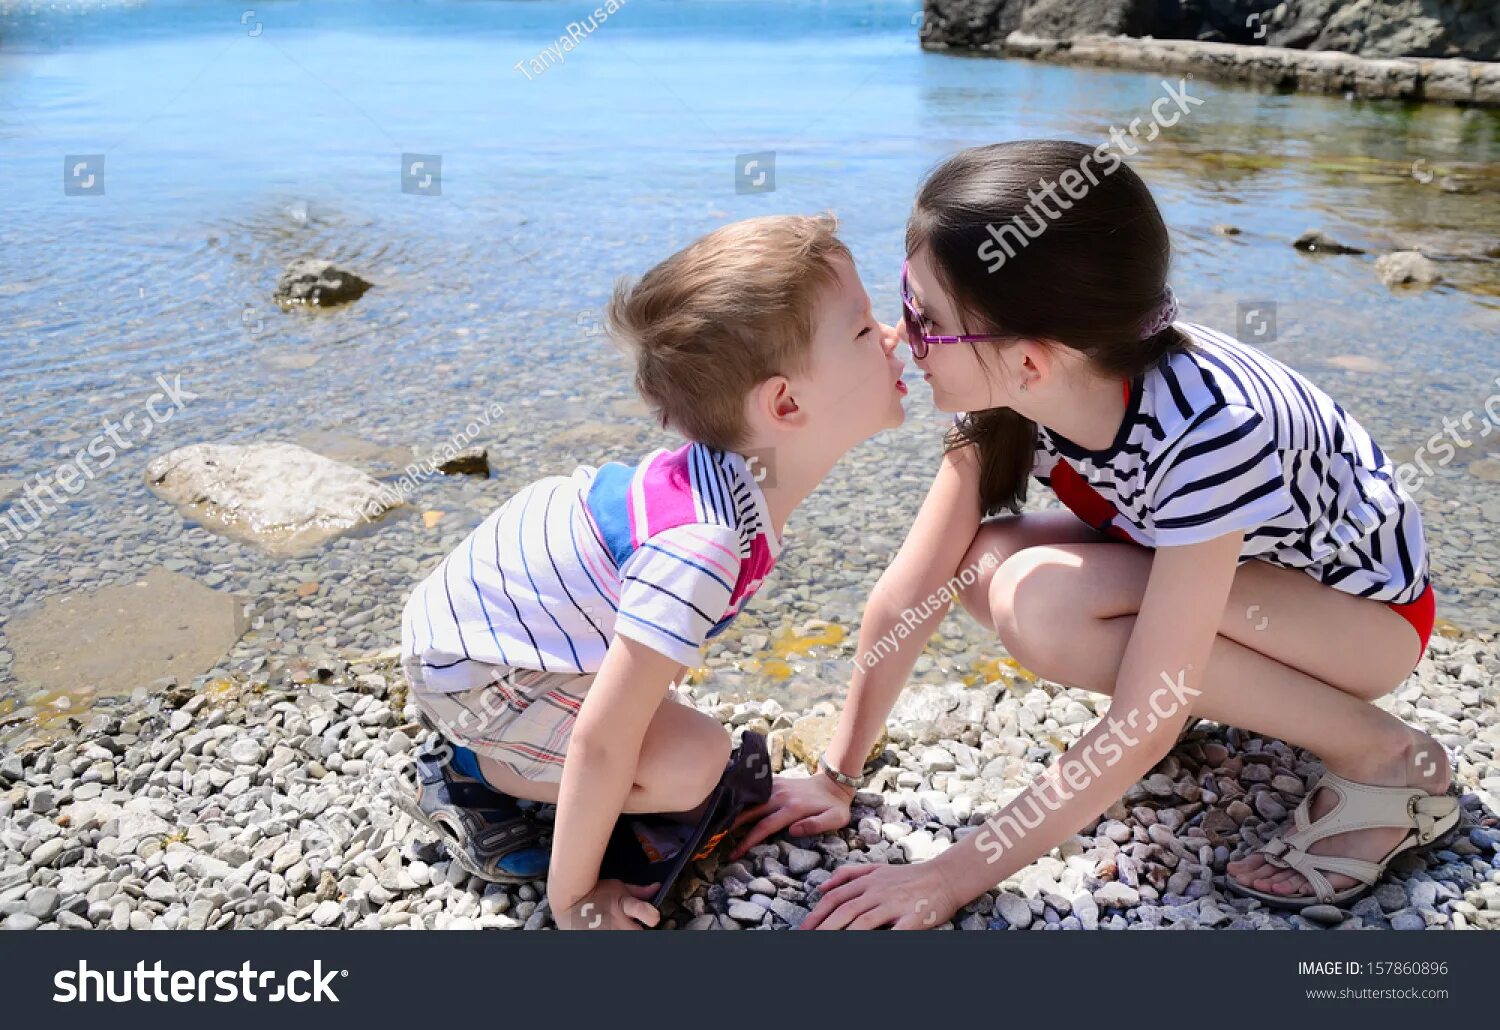 Брат трогает киску. Сестрички на пляжу лет 10. Маленький мальчик и девочка занимаются. Брат и сестра целуются. Поцелуй в 10 лет.